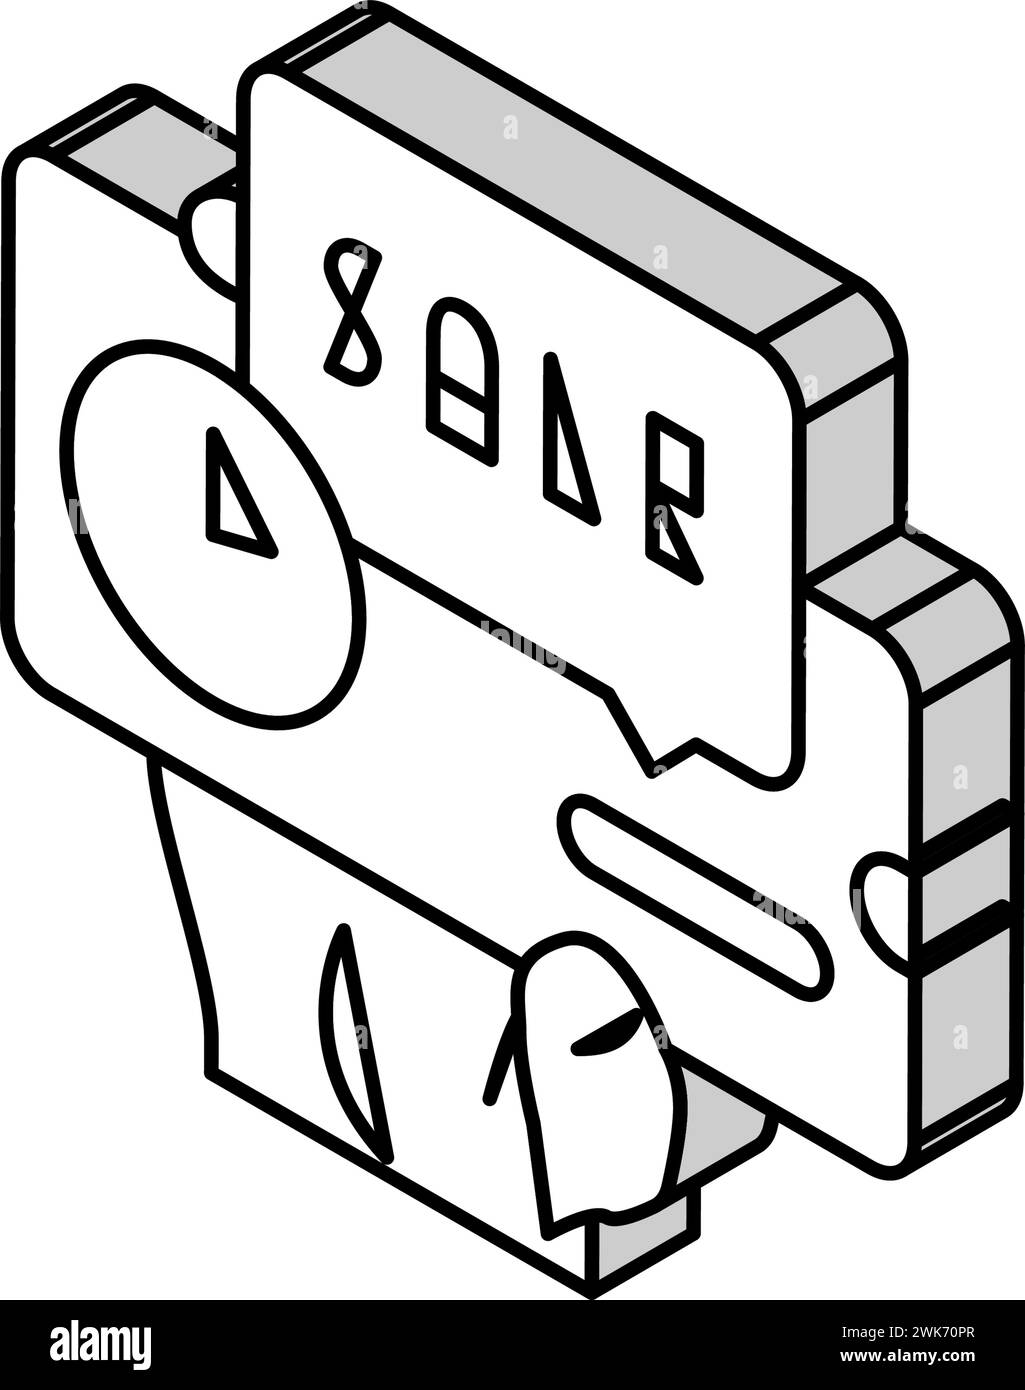 immagine vettoriale dell'icona isometrica effimera della carta di vendita Illustrazione Vettoriale